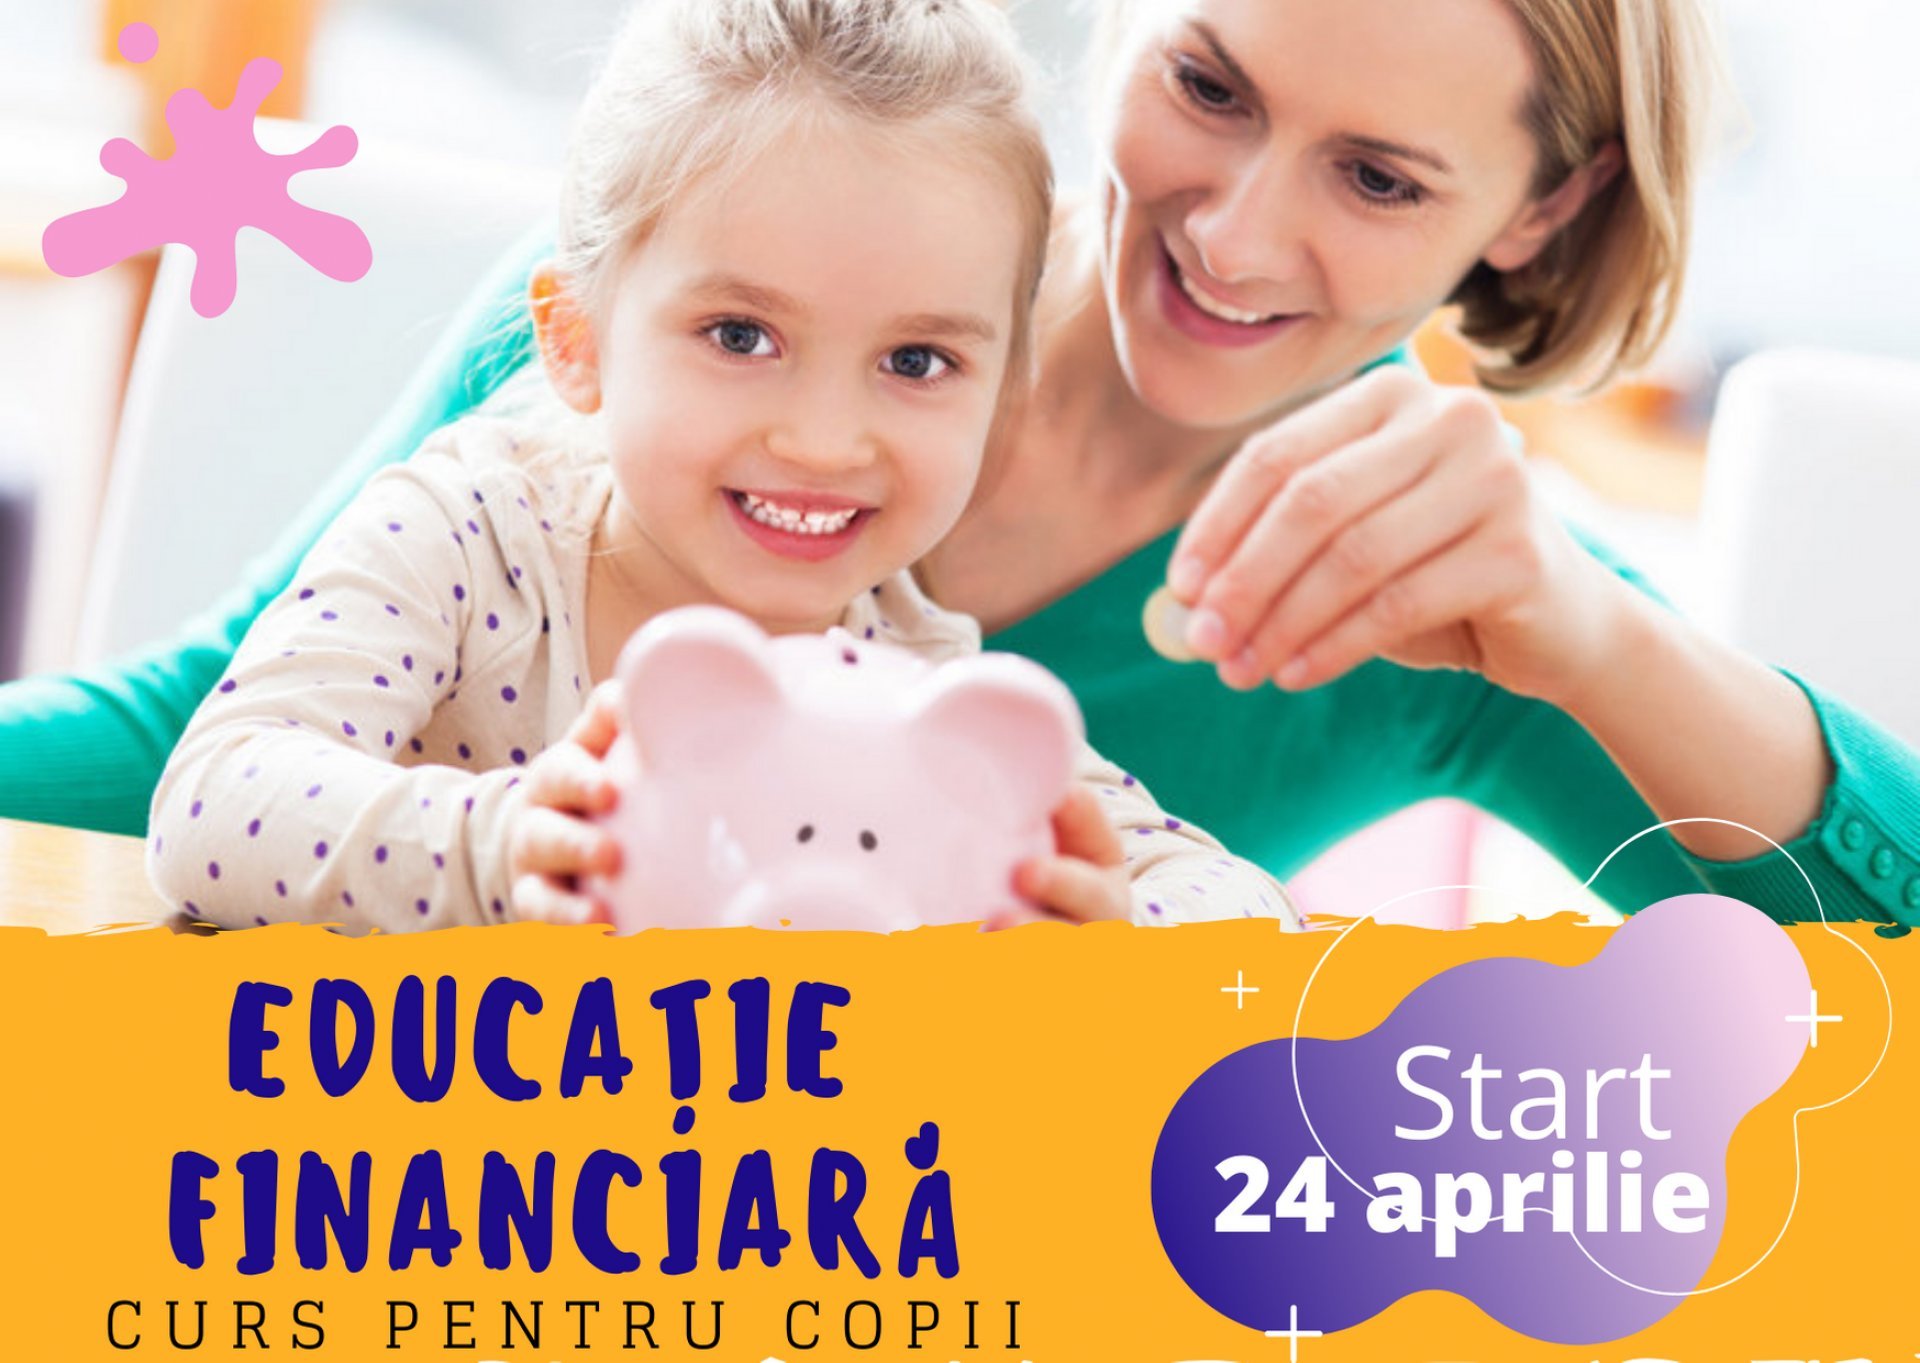 Educația financiară – educația utilă pentru întreaga viață a copilului și a adultului în devenire! Aprilie 2021